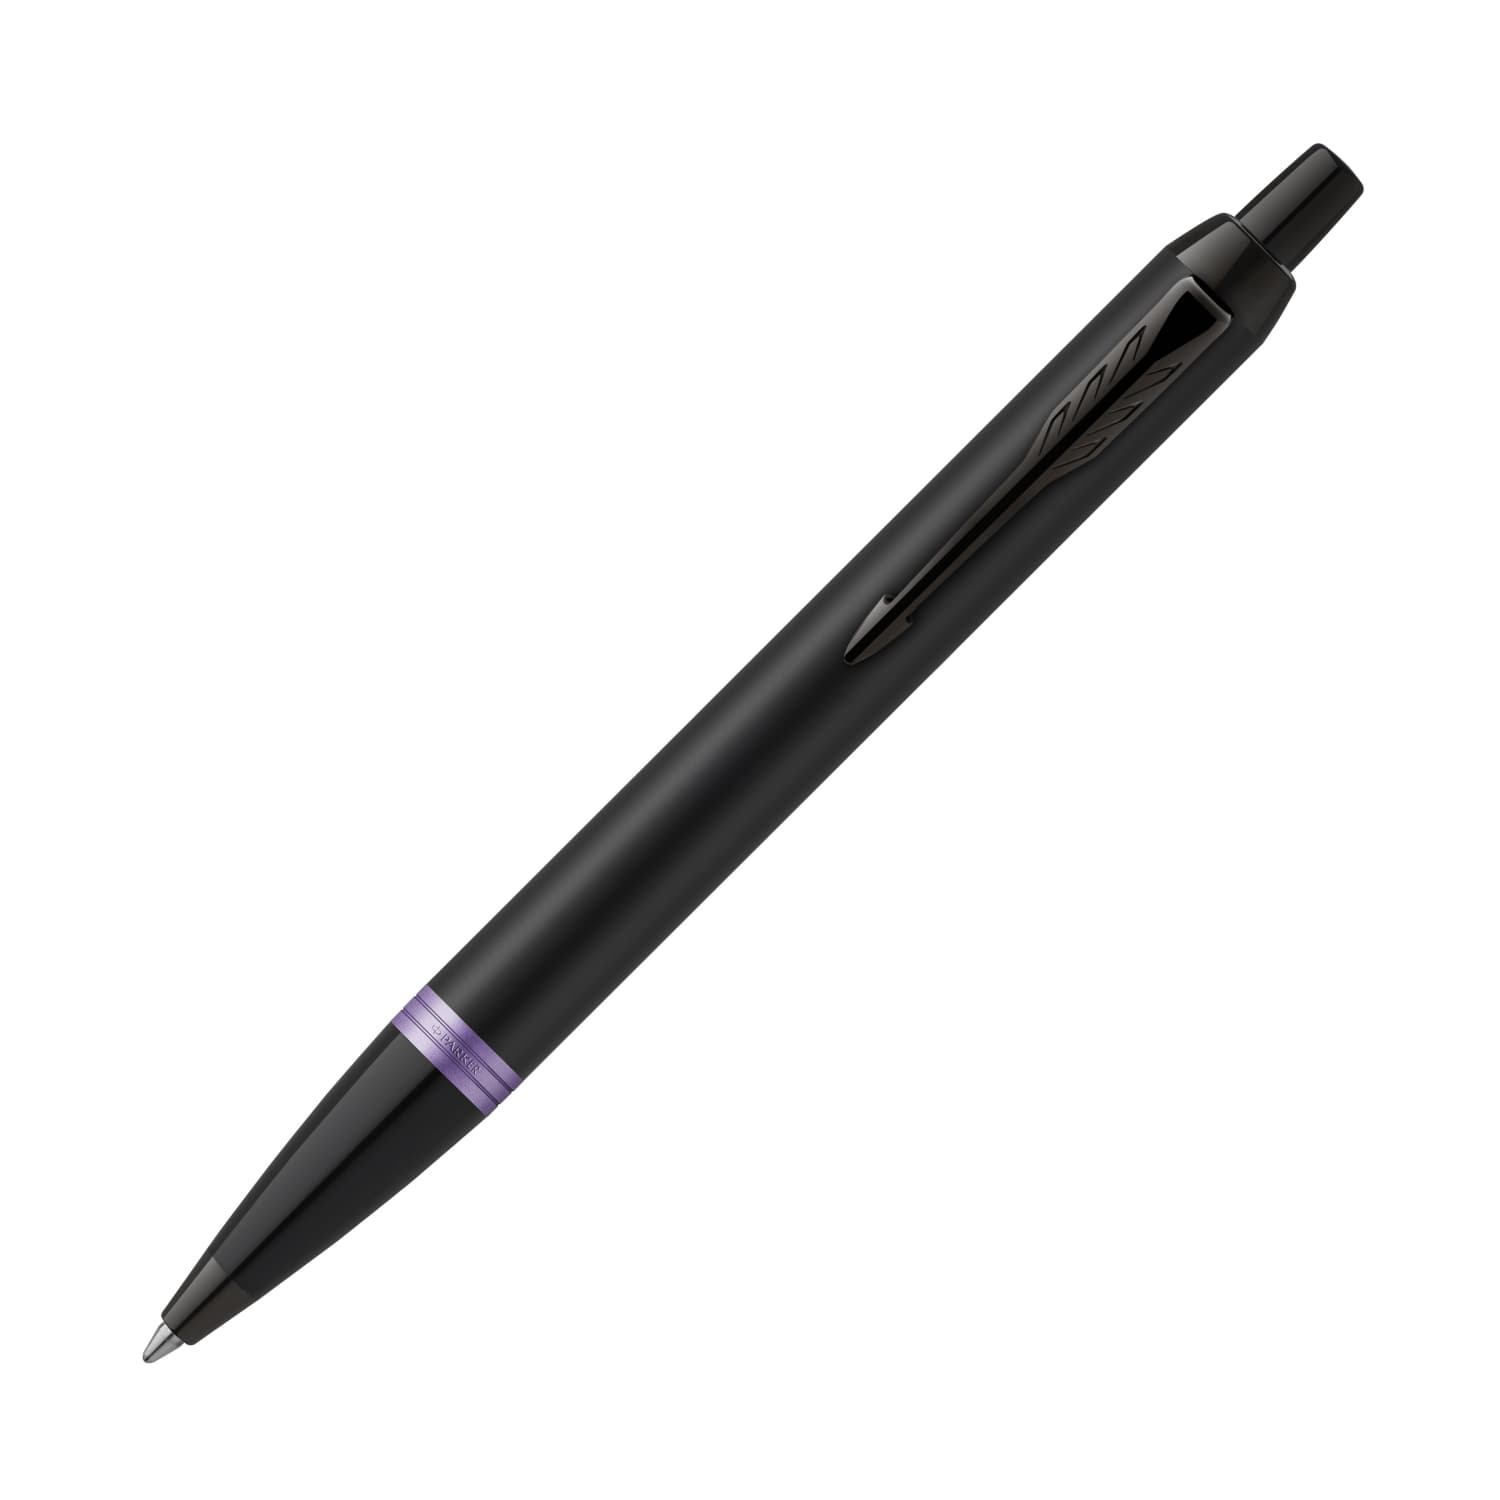 Gel Pens, Set of 50 Black Roller Ball Bullet Journal Pens